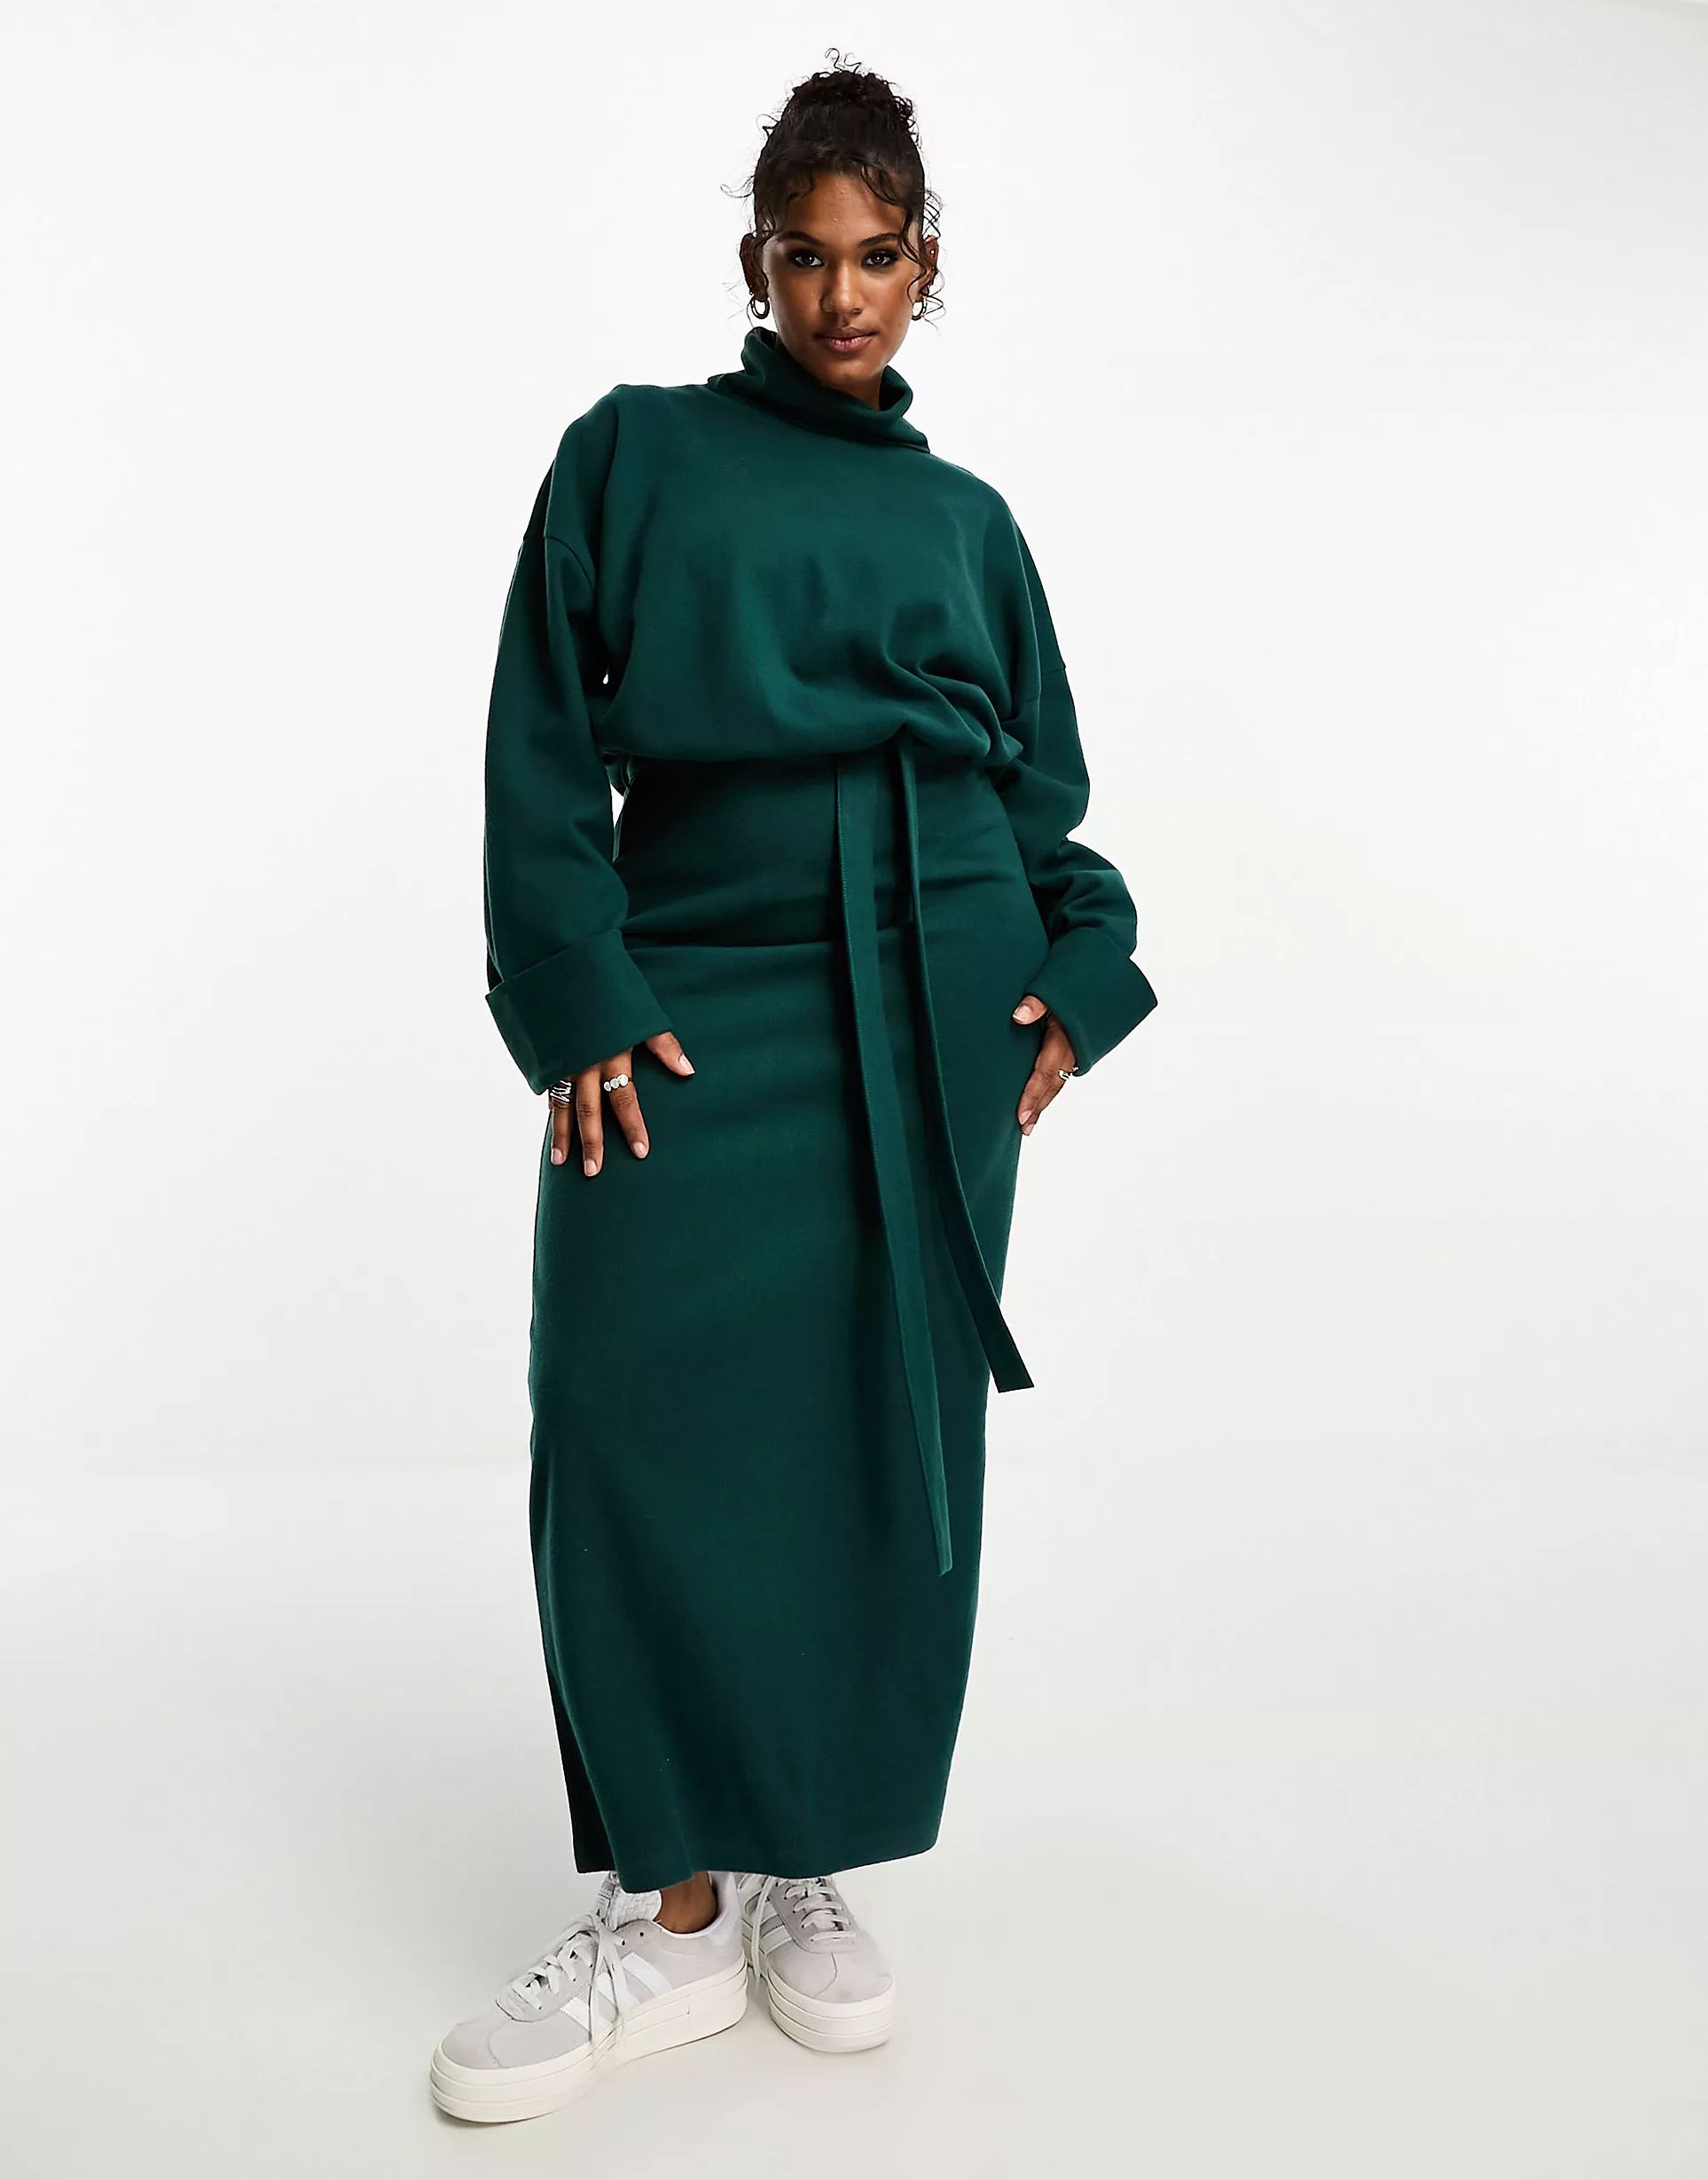 ASOS DESIGN Curve supersoft volume sleeve roll neck belted maxi jumper dress in forest green - DG... | ASOS (Global)